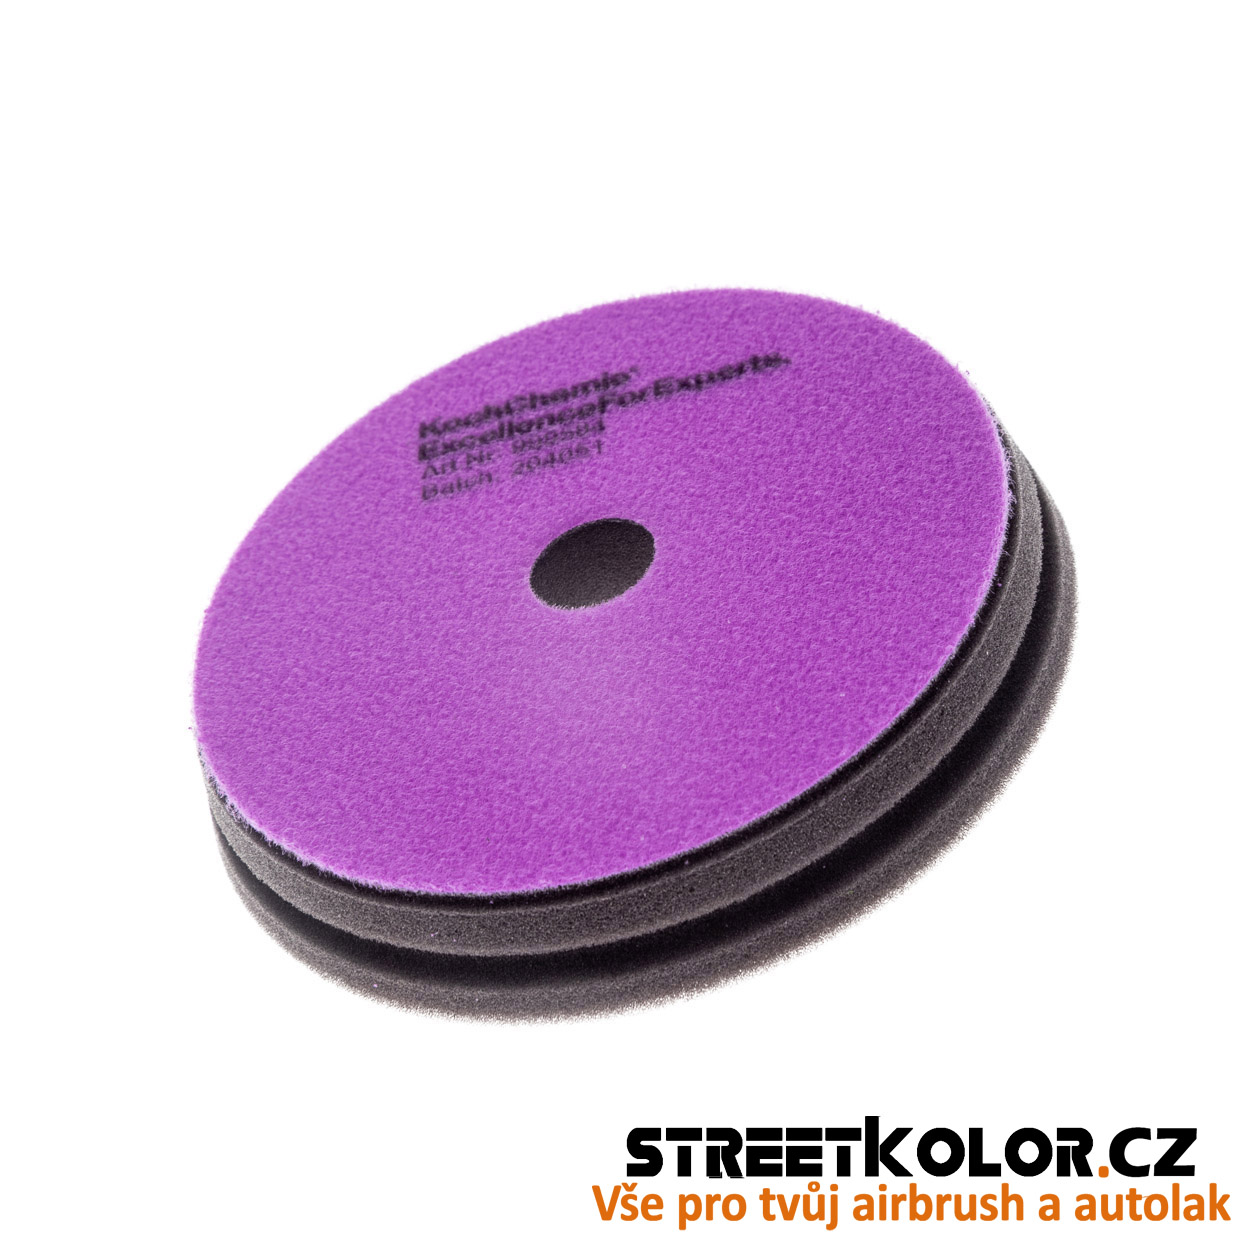 KochChemie Finální antihologramový fialový leštící kotouč Micro Cut Pad 76x 23mm